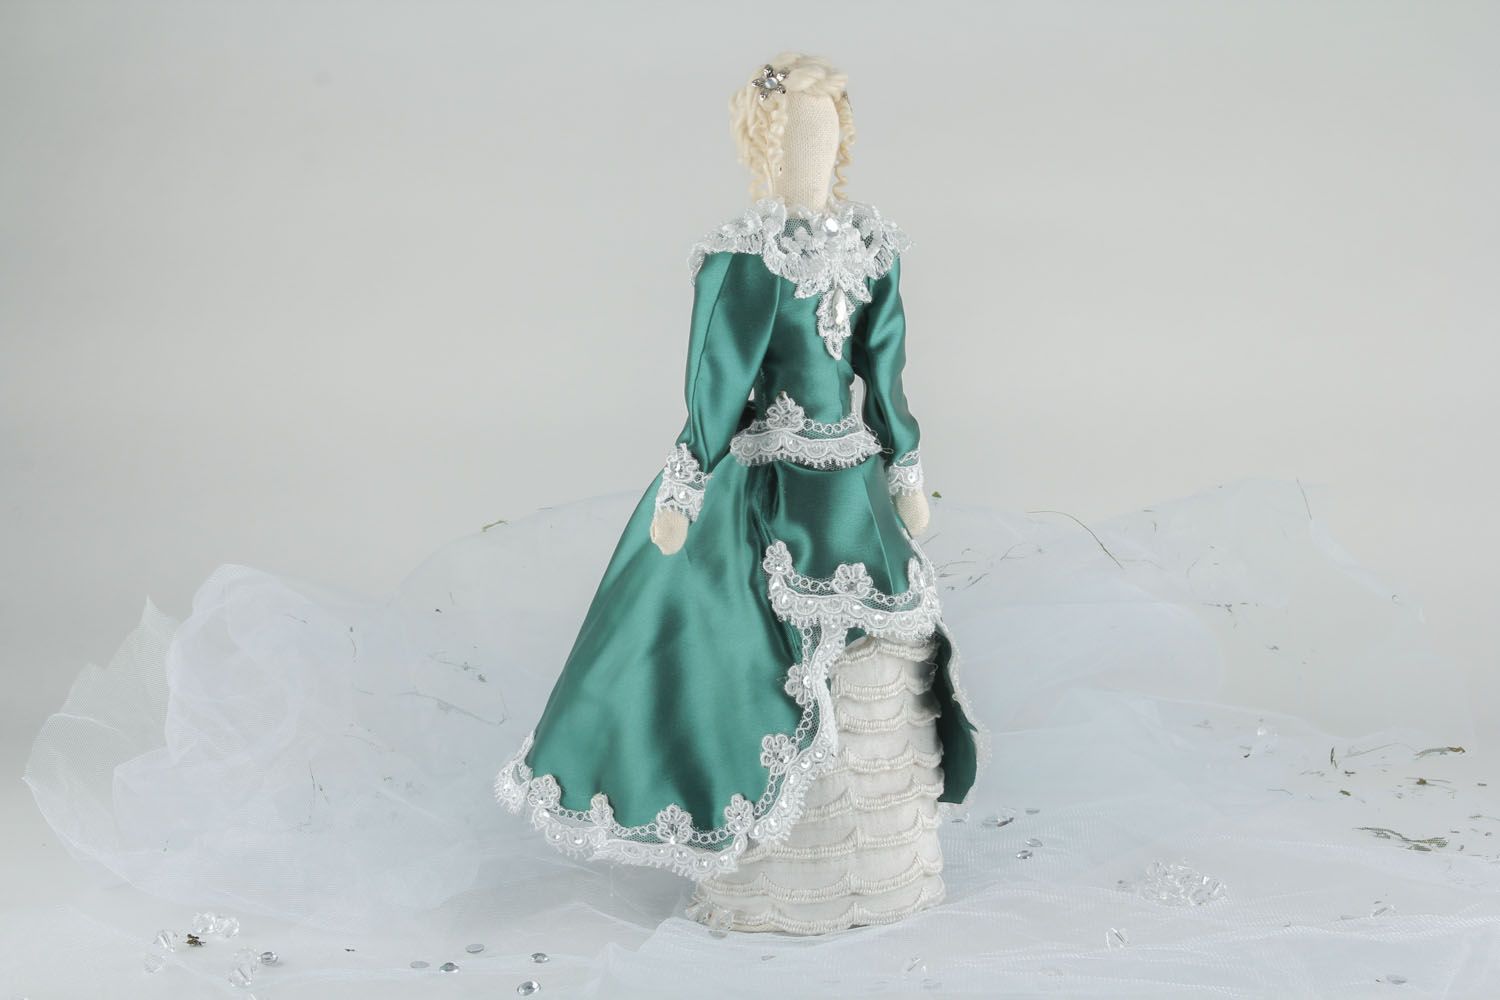 Интерьерная кукла ручной работы в пышном платье фото 1